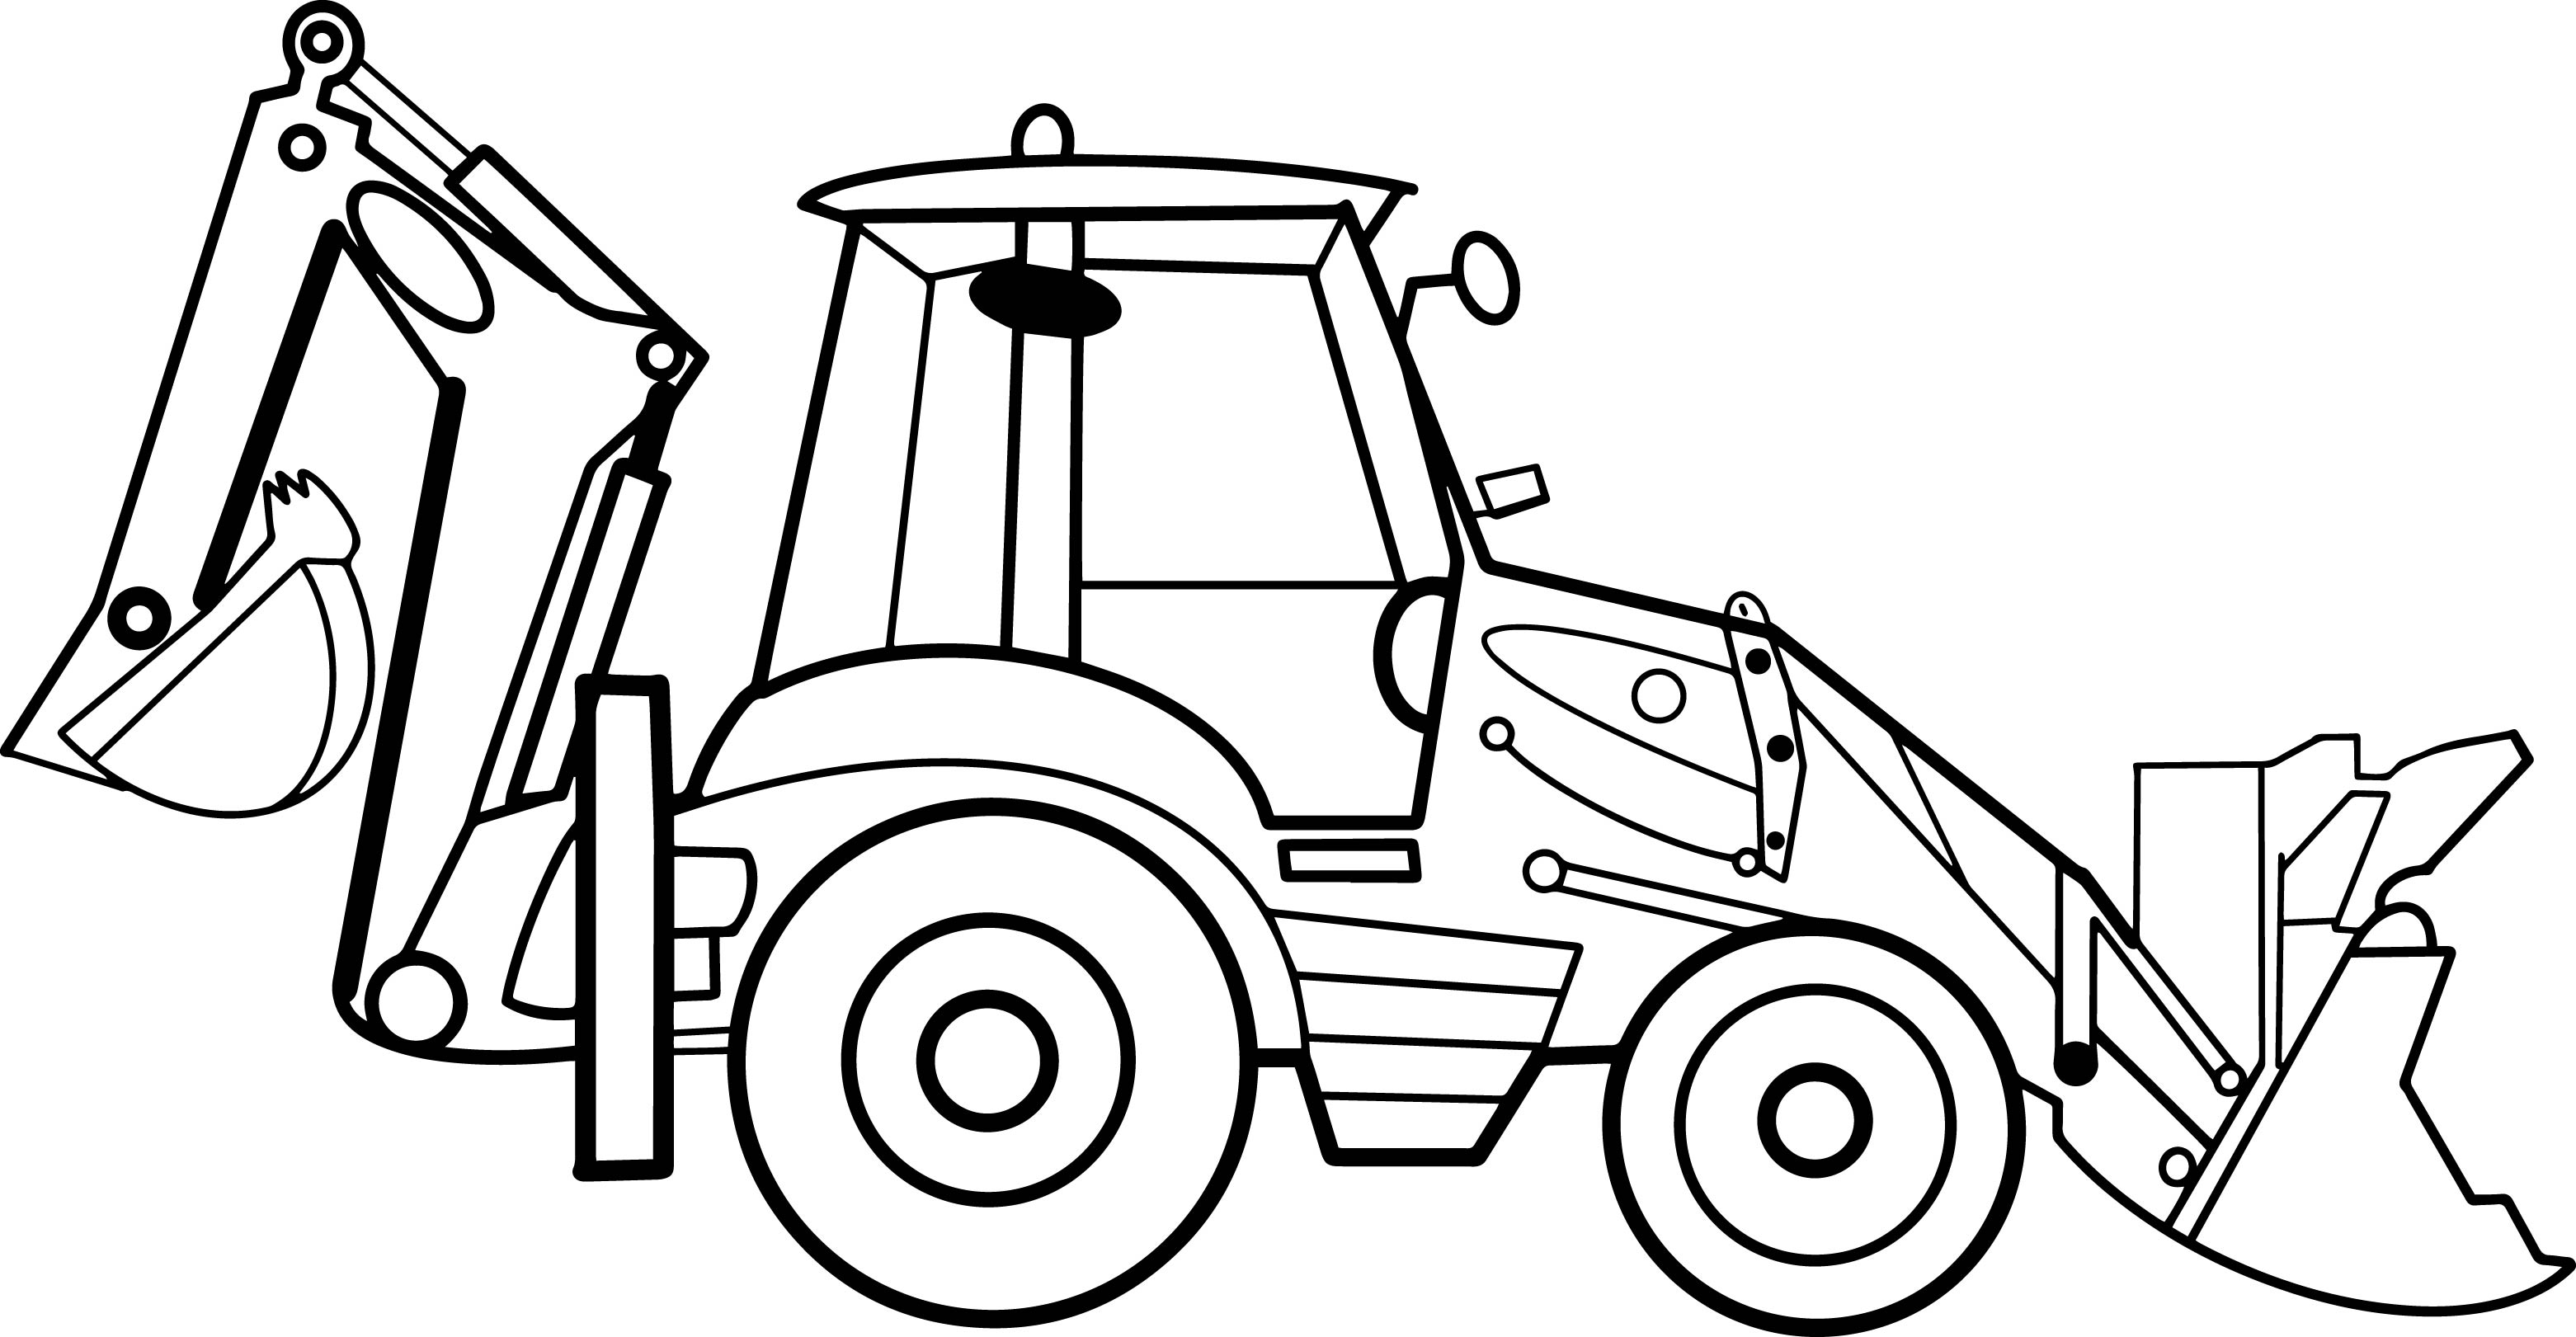 Раскраска трактор экскаватор с ковшом формата А4 в высоком качестве